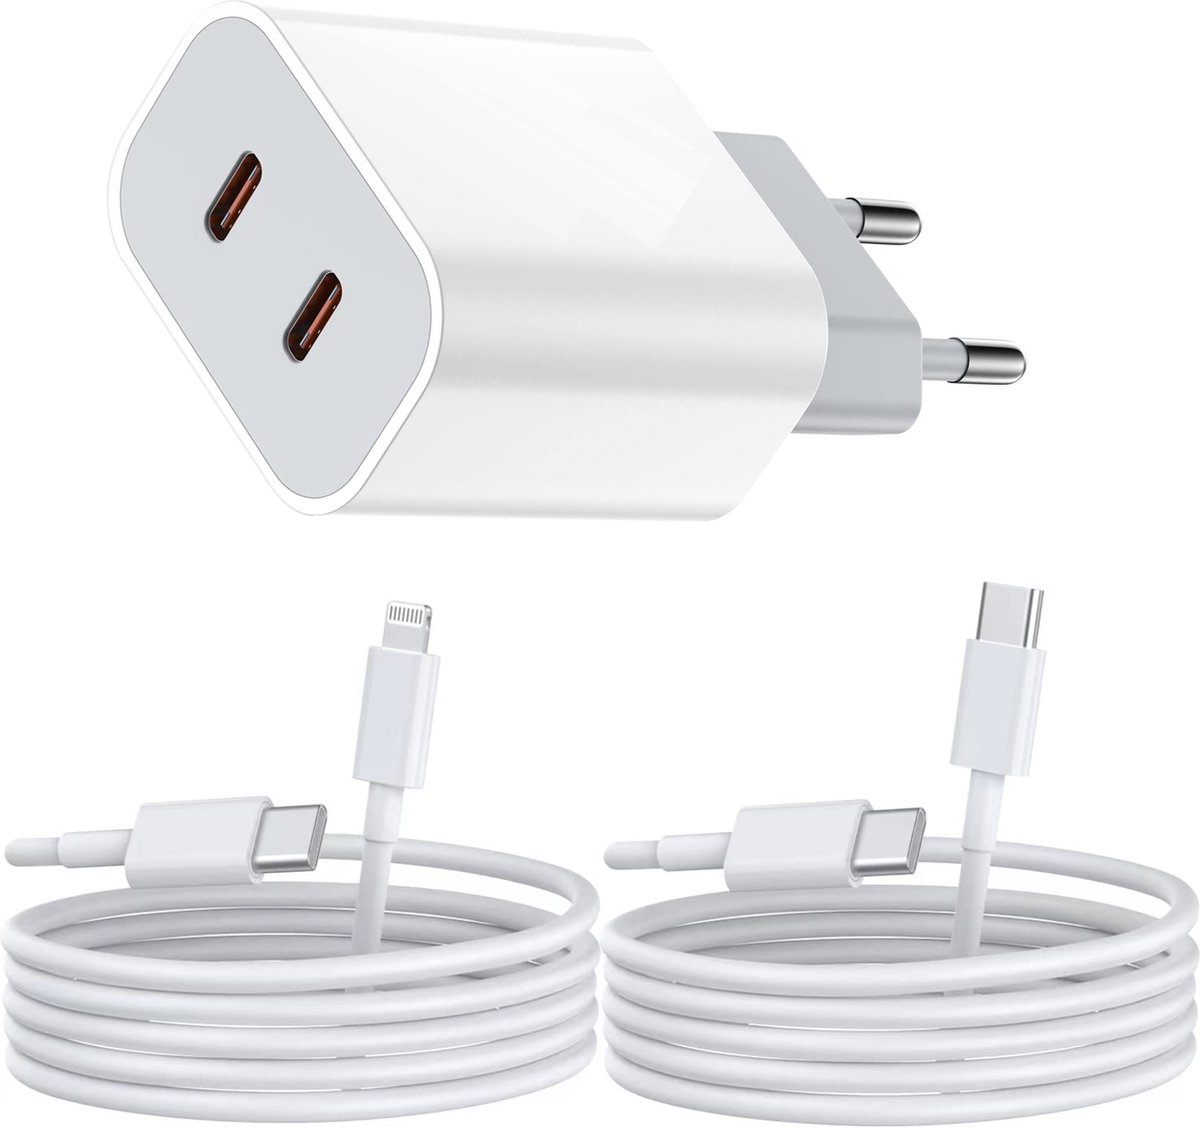 35W Oplaadset met 2 USB C Kabels - Geschikt voor Apple iPad, iPhone met Lightning naar USB C Oplaadkabel - 2 Meter - 2 Poorten - Snel Opladen - CoverMore